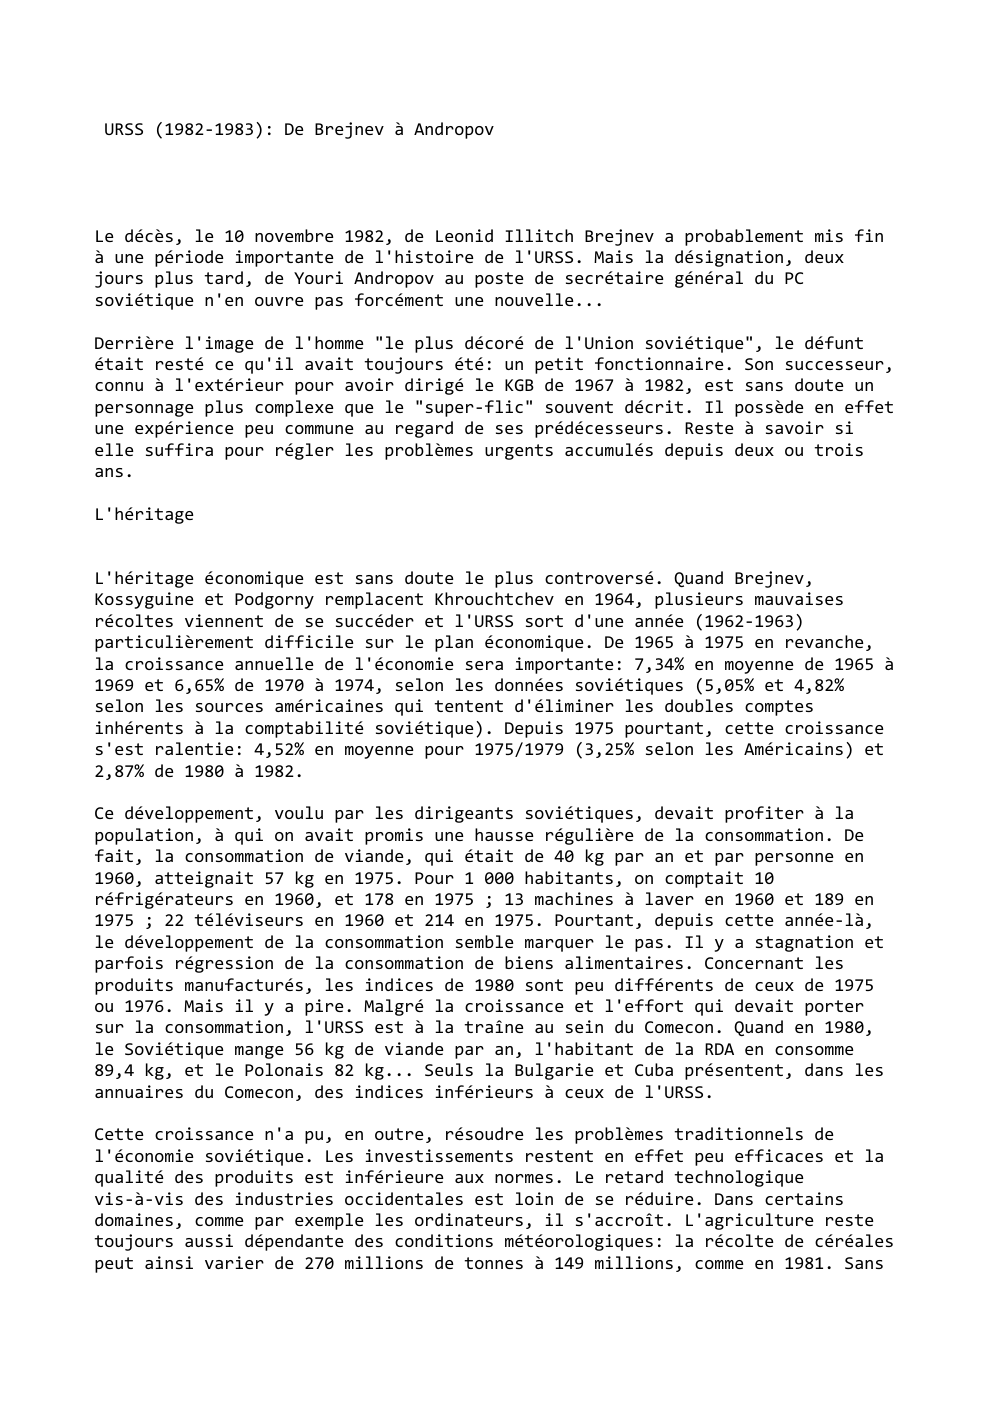 Prévisualisation du document URSS (1982-1983): De Brejnev à Andropov

Le décès, le 10 novembre 1982, de Leonid Illitch Brejnev a probablement mis fin...